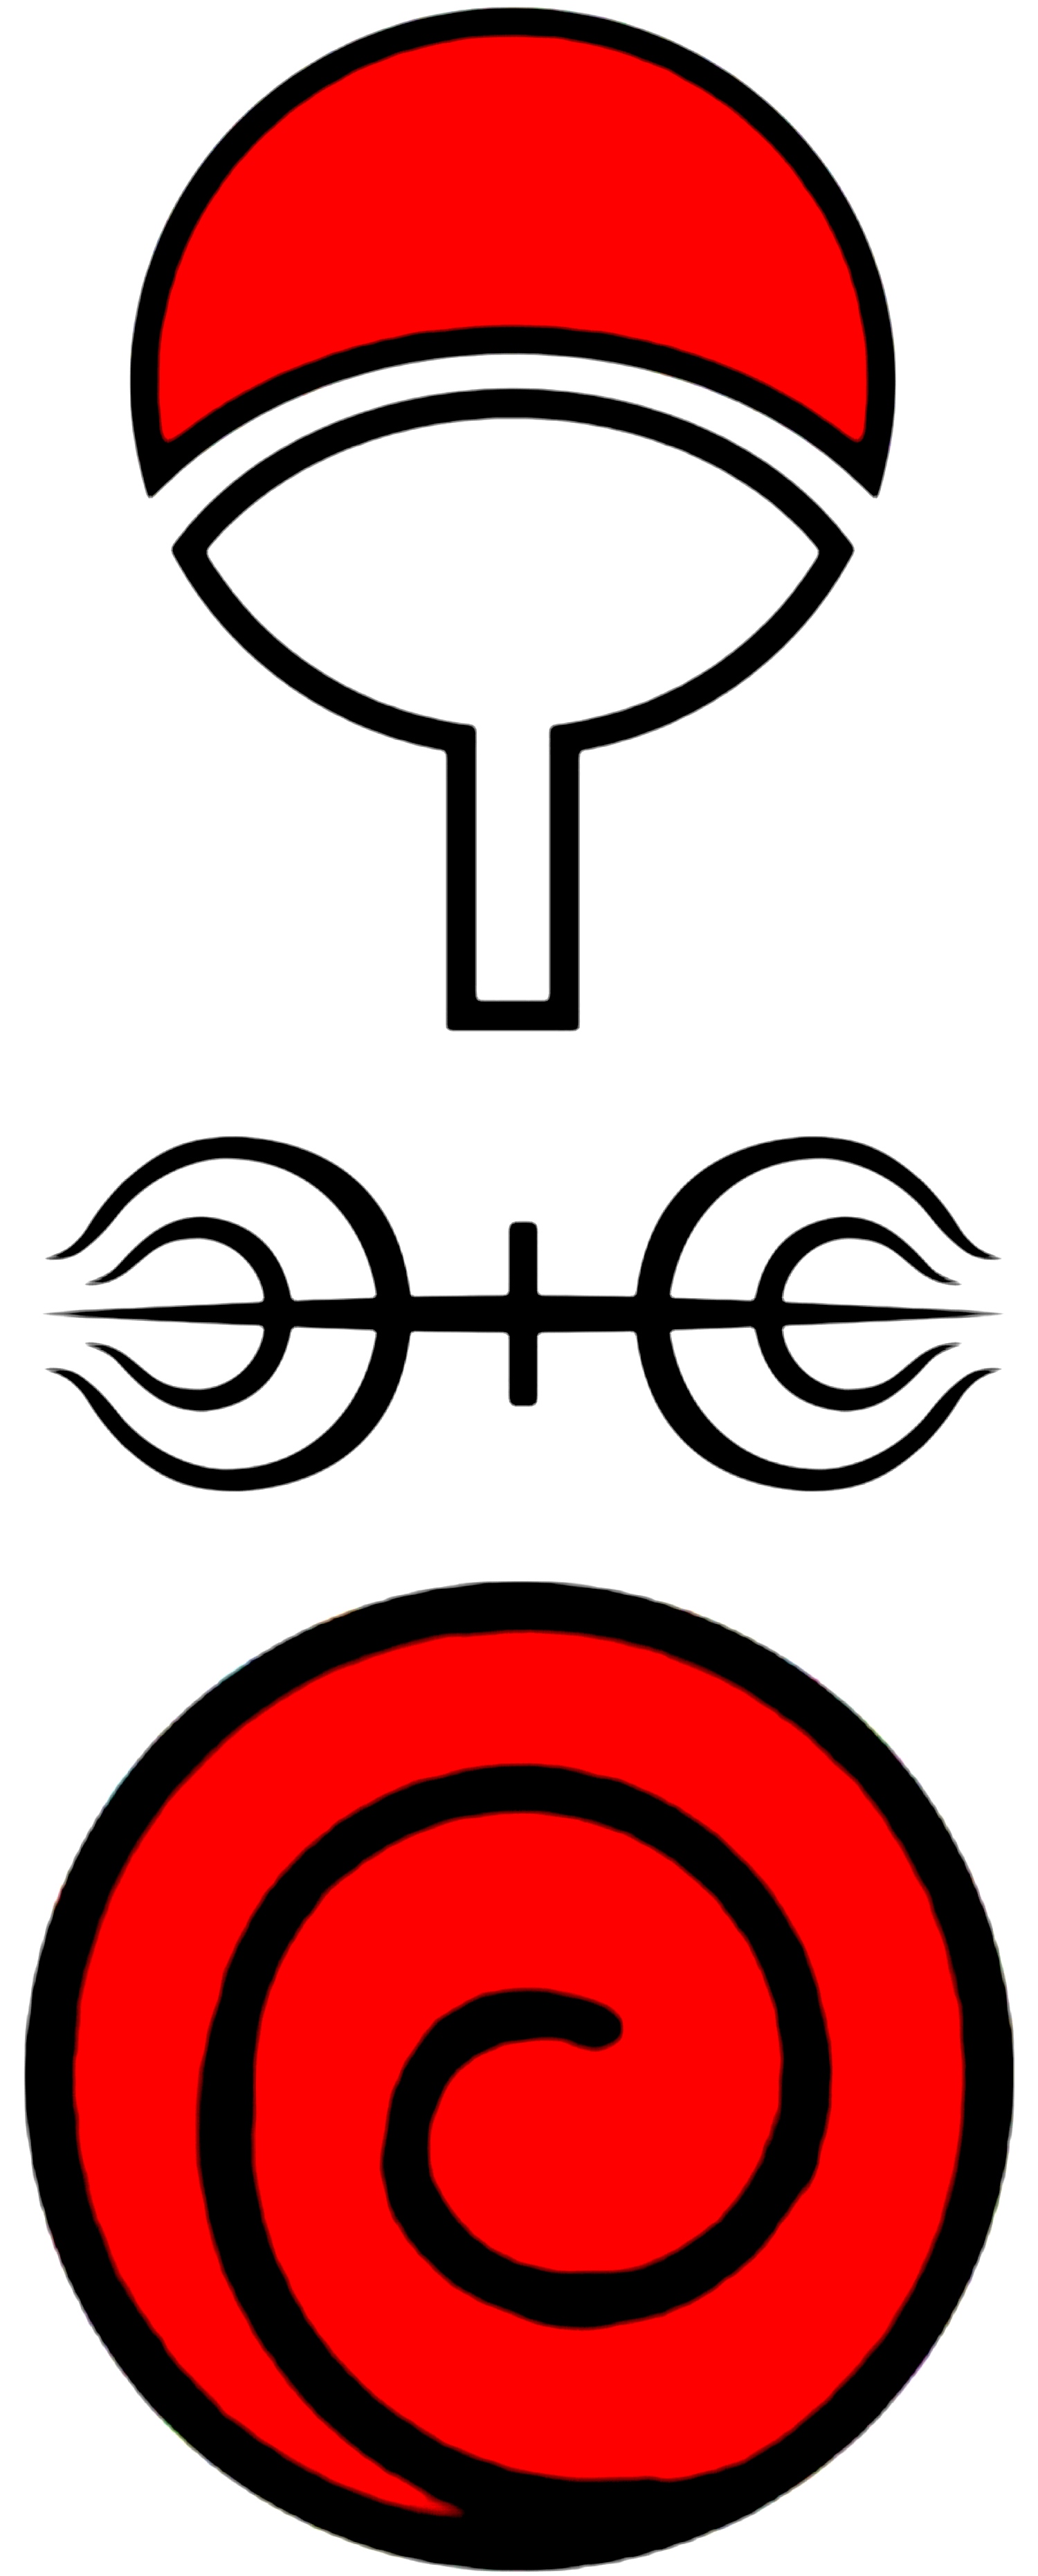 宇智波的图案符号图片